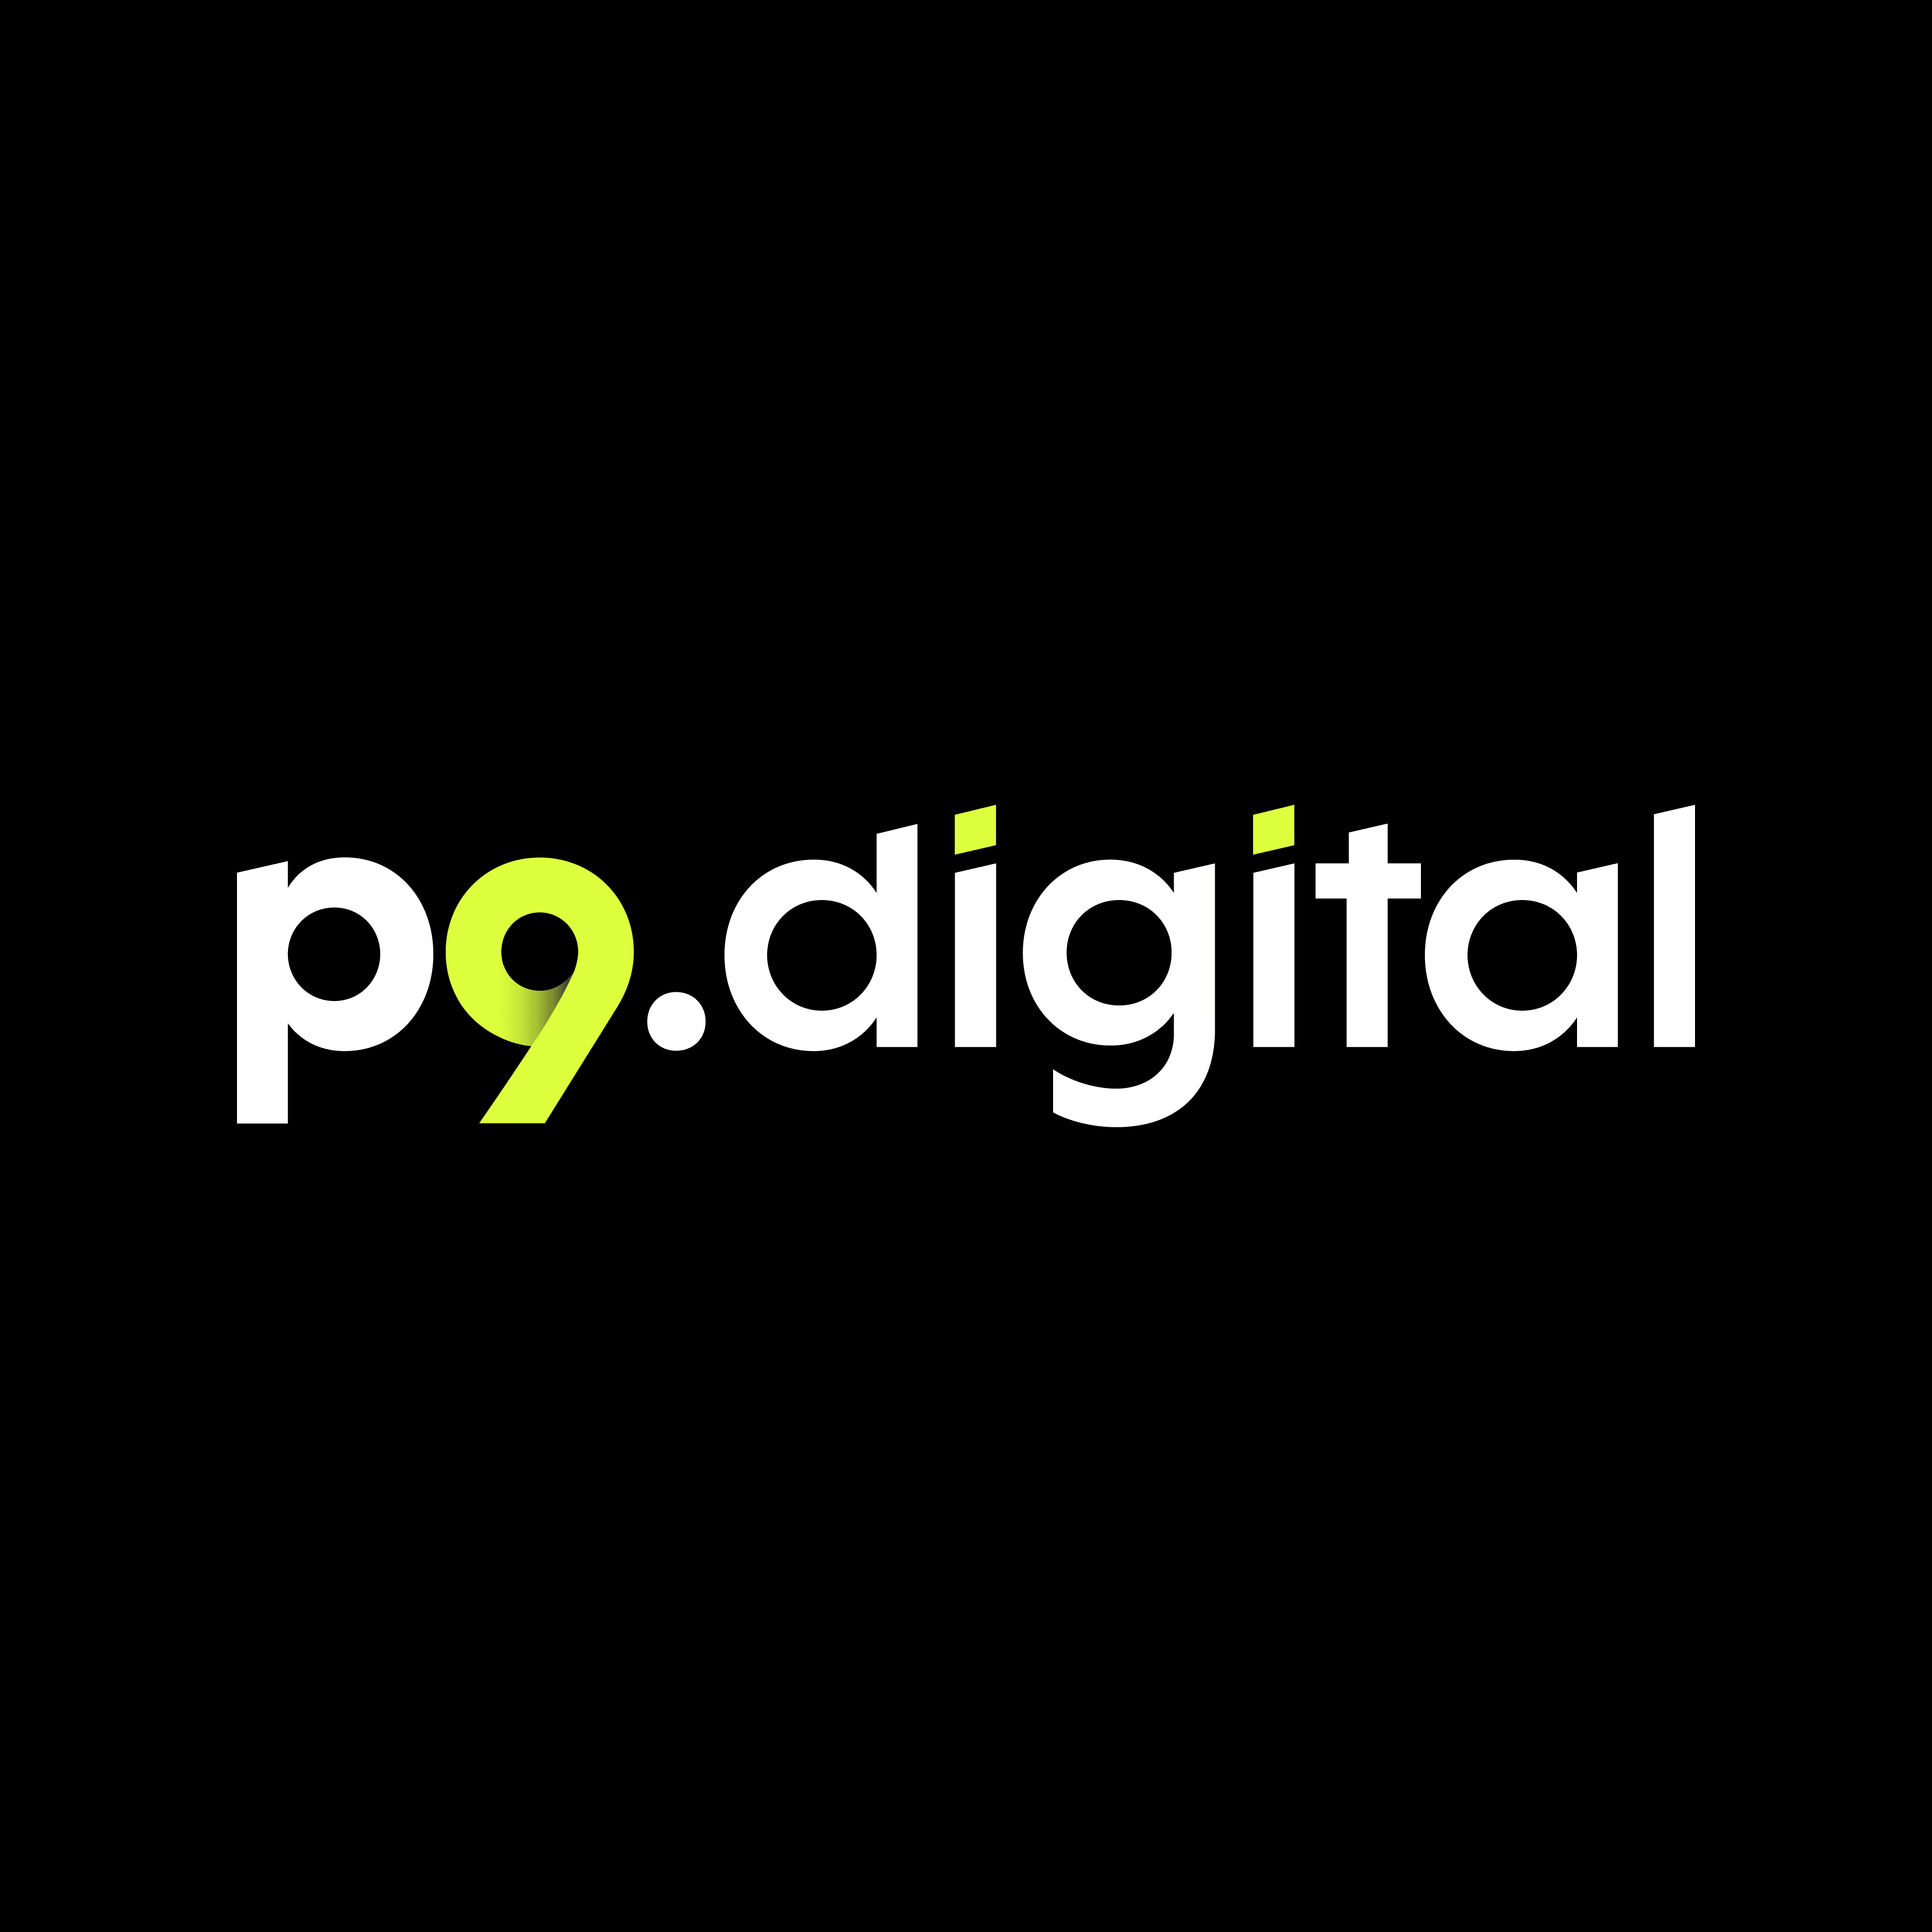 p9.digital